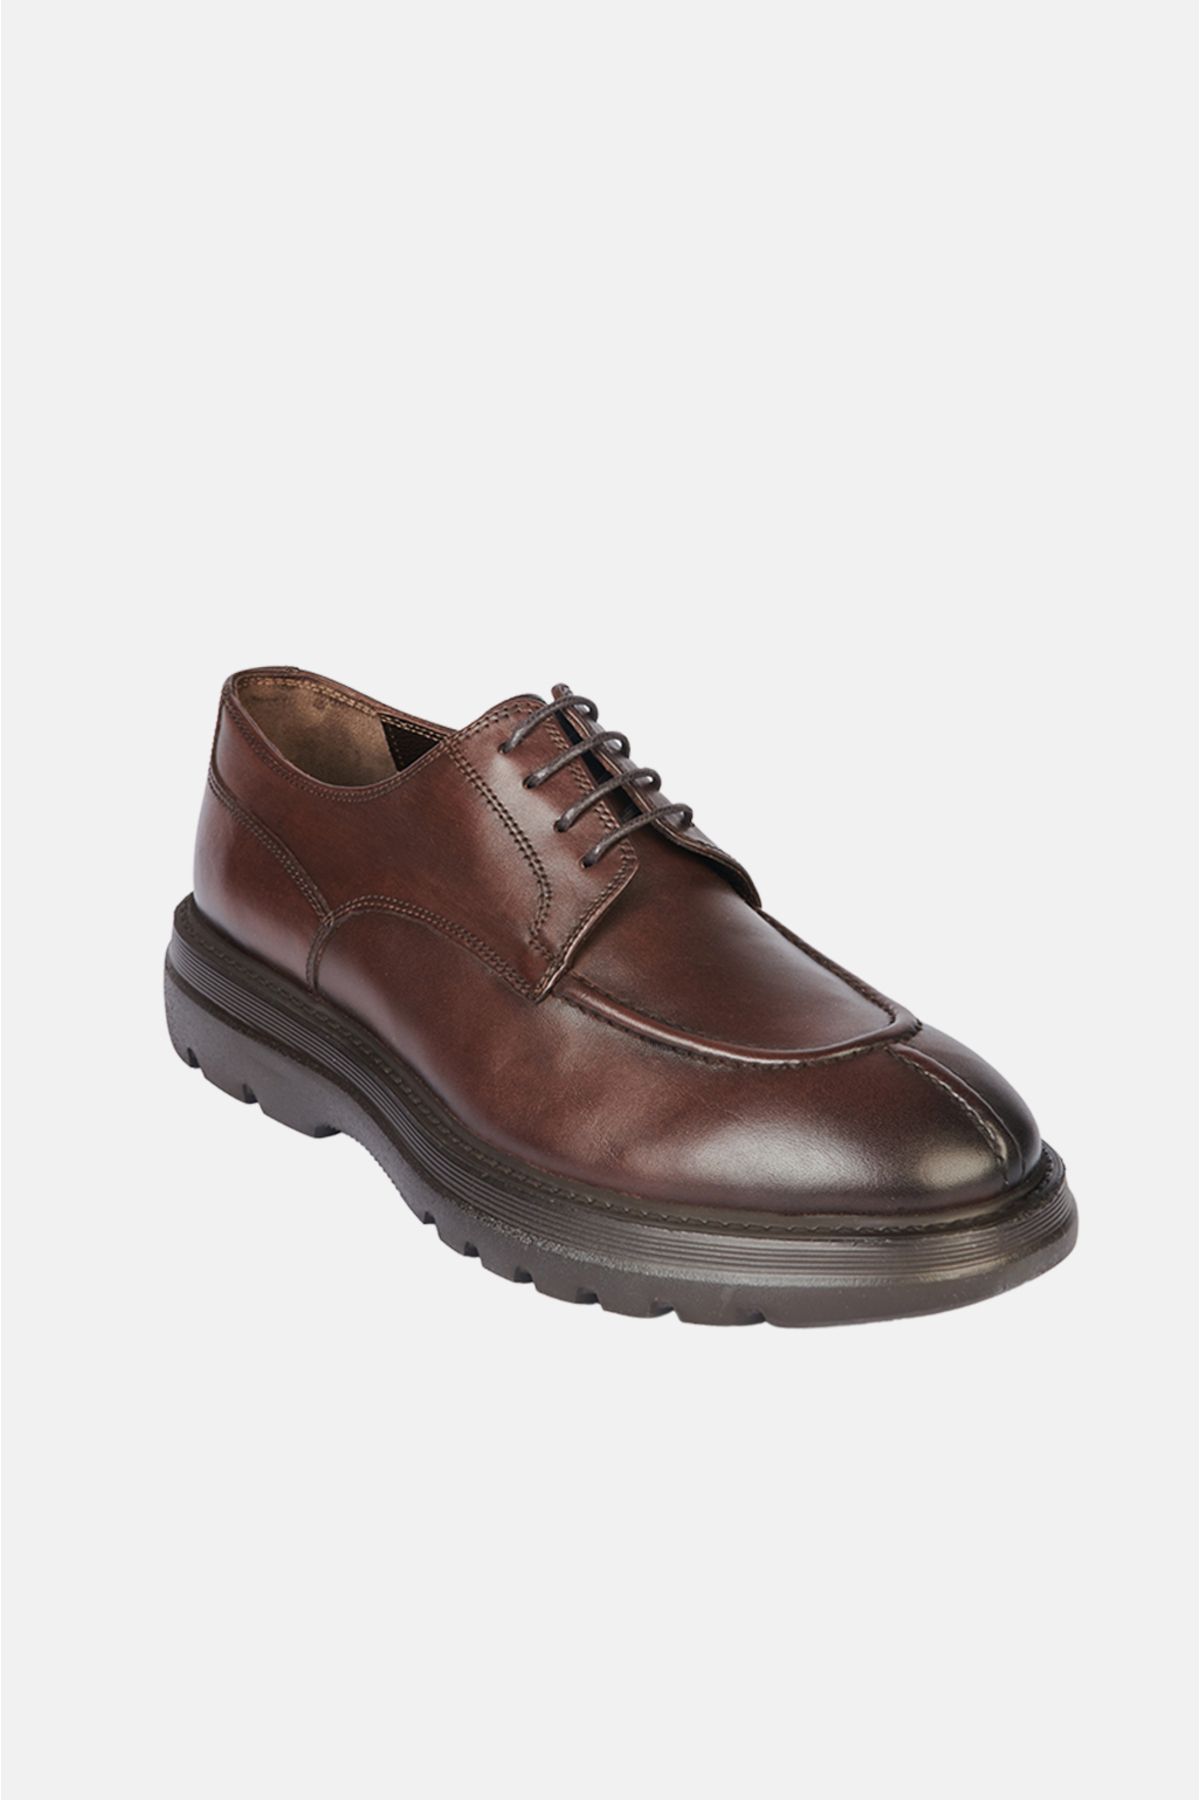 Avva Erkek Kahverengi %100 Deri Burnu Dikişli Bağcıklı Klasik Ayakkabı A32y8014